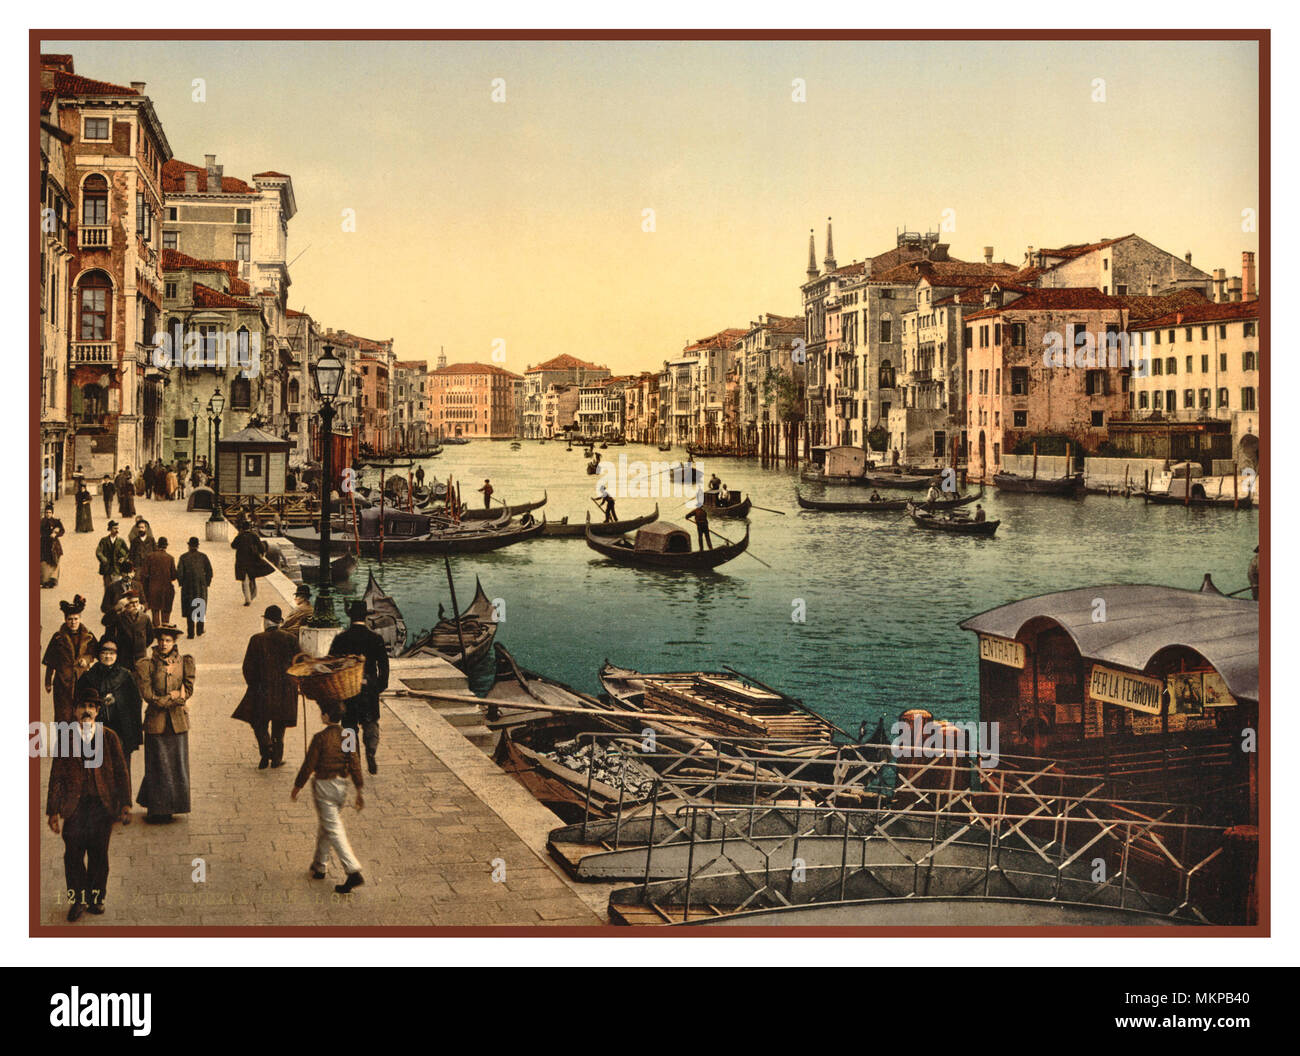 GRAND CANAL GONDOLIERI Vintage Altstadt von Venedig 1890 -1900 Photochrom Sicht der belebten Grand Canal, mit Gondolieri Wassertaxi Vaporetto die Besucher an ihren Bestimmungsort Piers Stockfoto